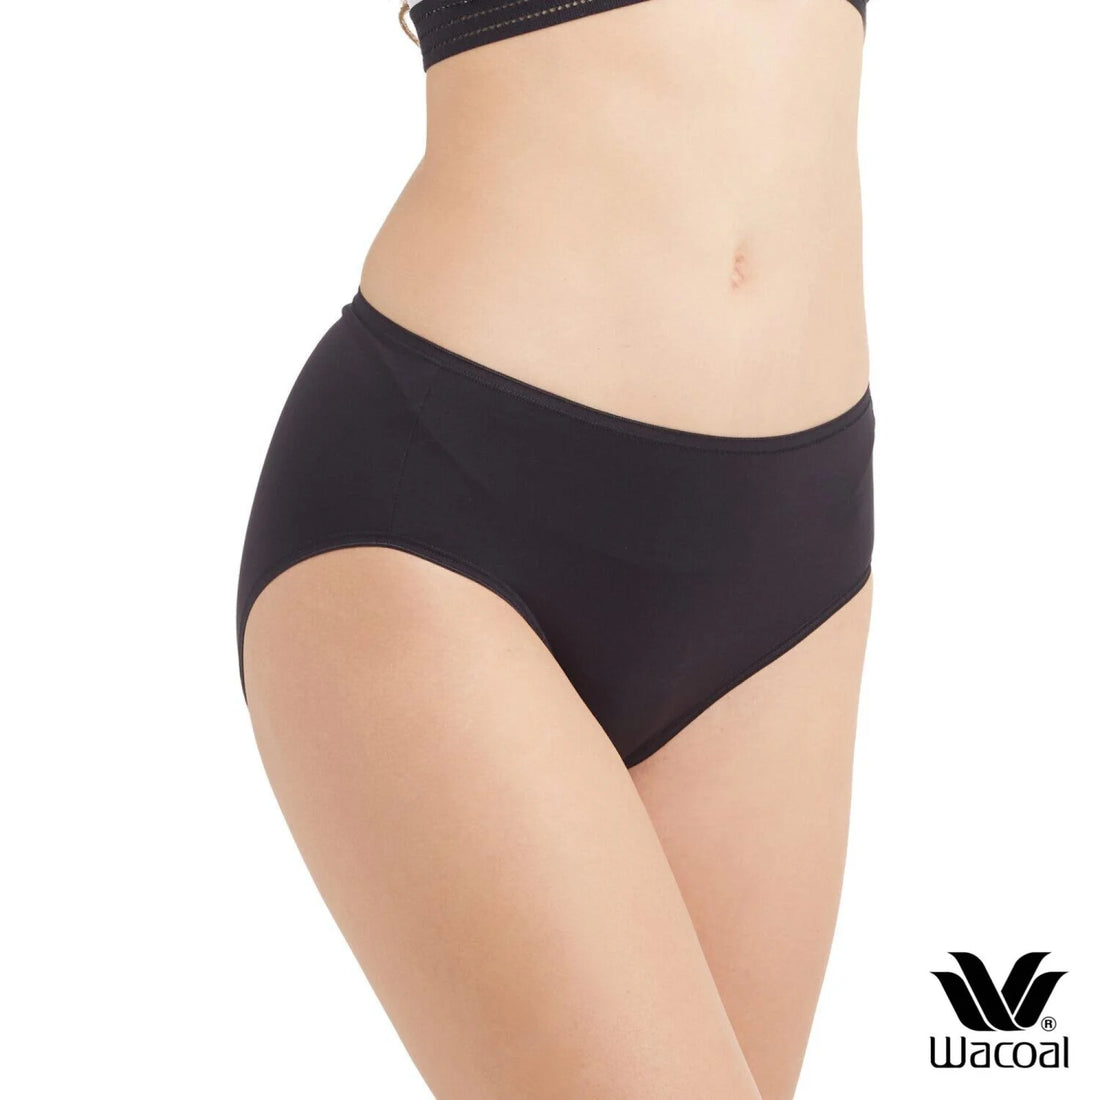 Wacoal Super soft panty กางเกงในนุ่มสบาย รูปแบบครึ่งตัว Set 3 ชิ้น รุ่น WU3T11 คละสี (สีดำ-สีเนื้อ-สีชมพูอ่อน)